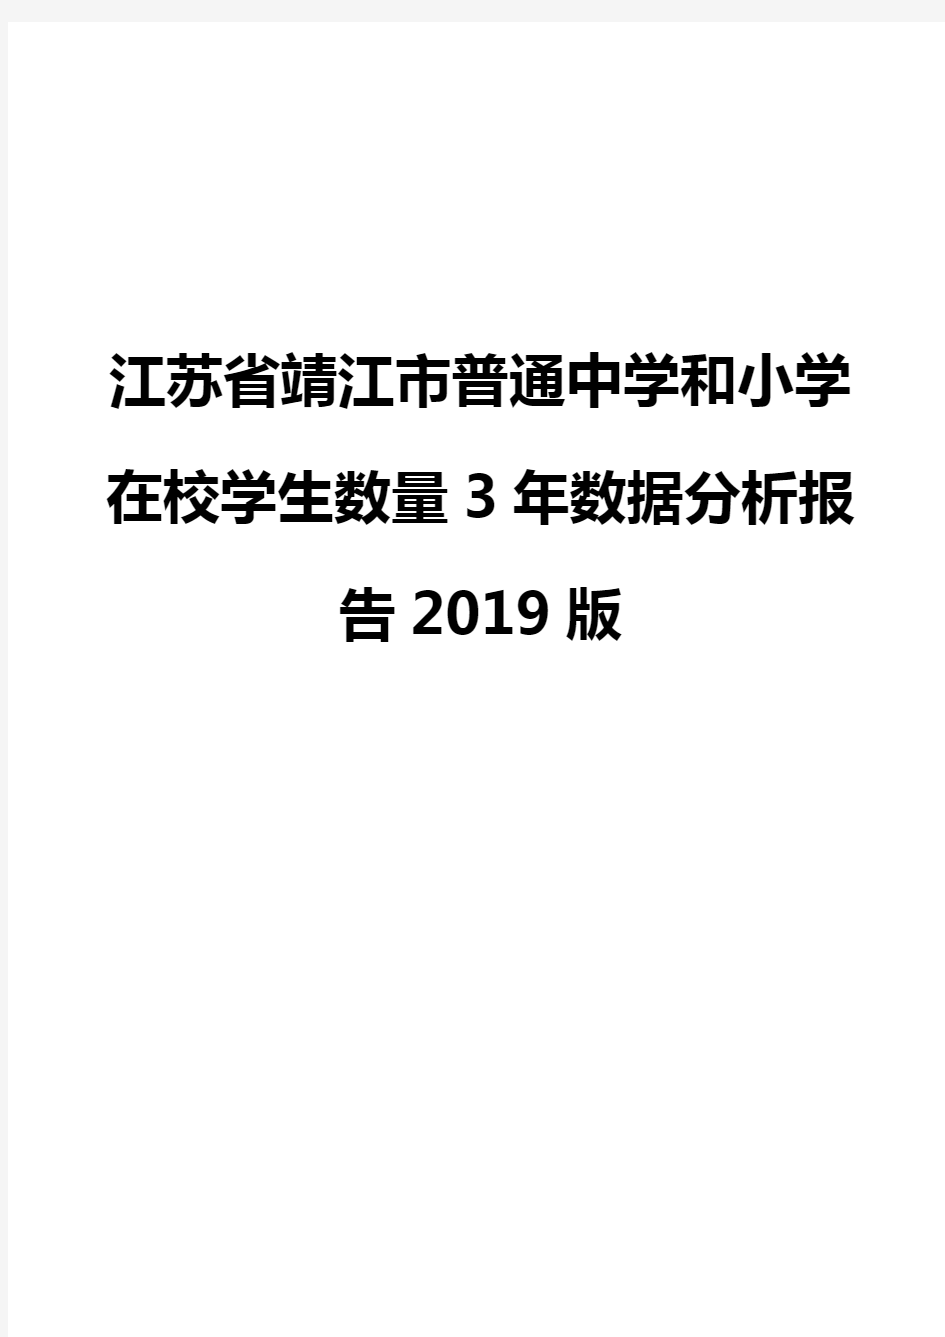 江苏省靖江市普通中学和小学在校学生数量3年数据分析报告2019版